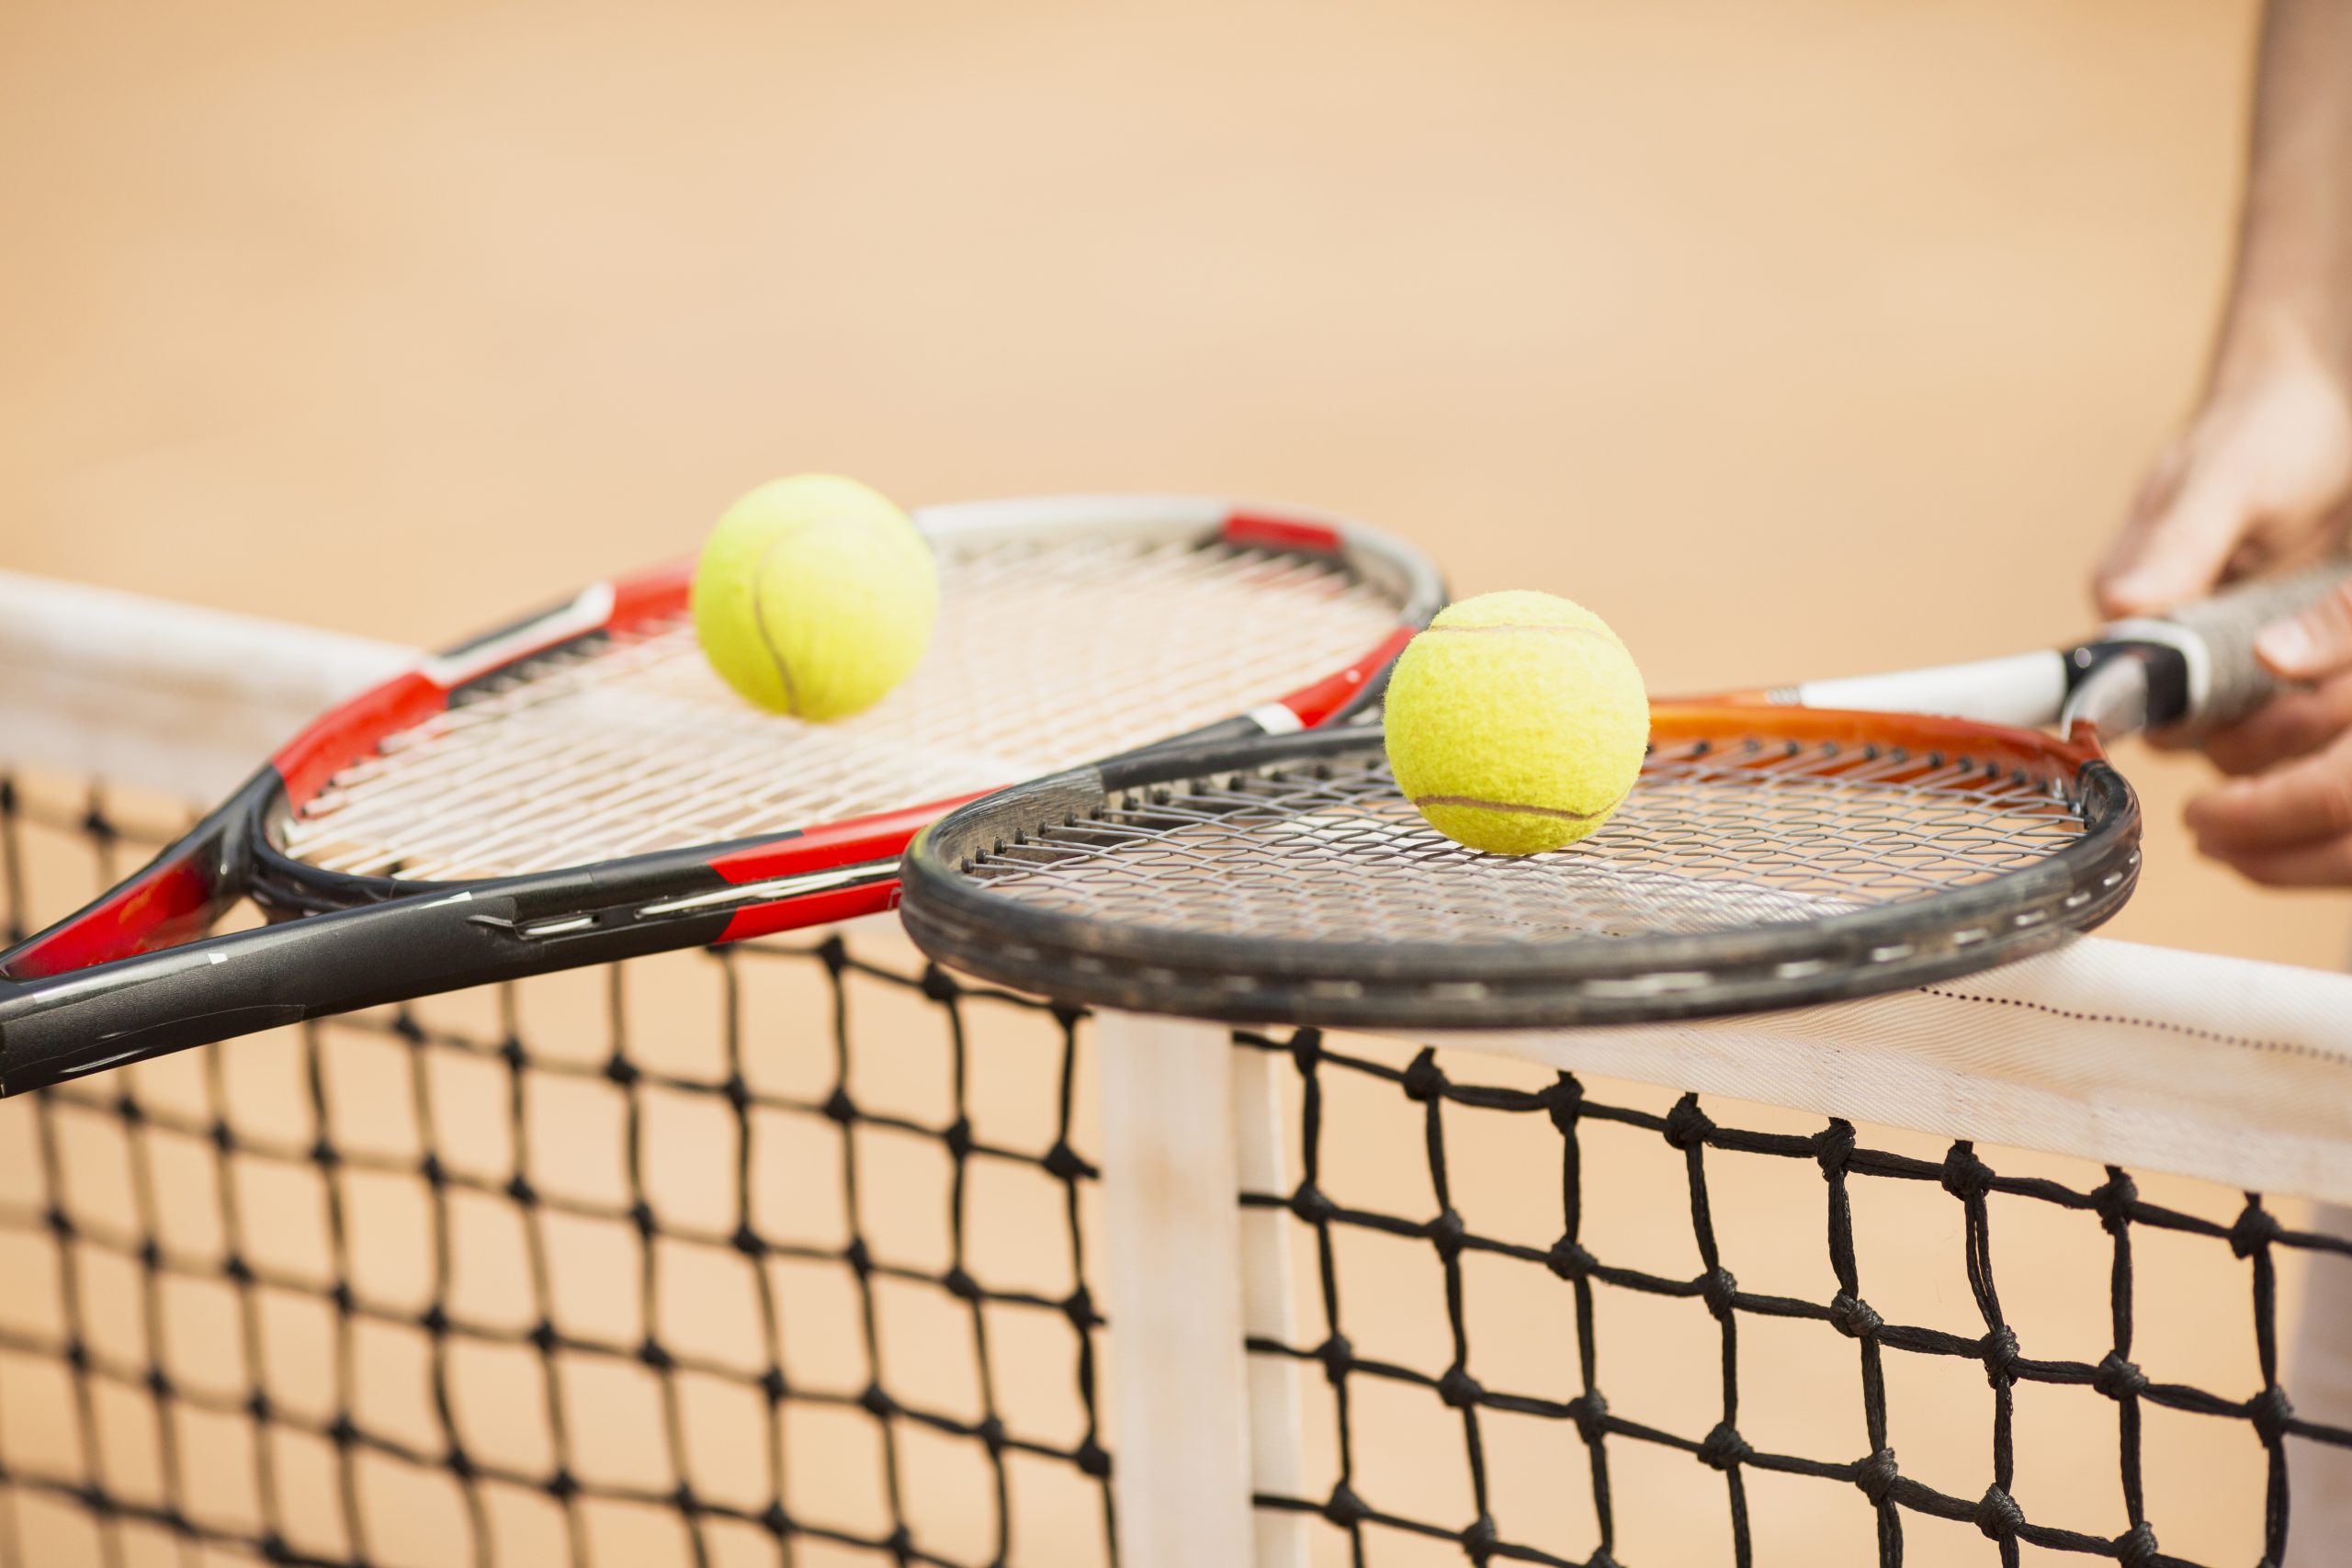 Aprenda as regras básicas do jogo de tênis